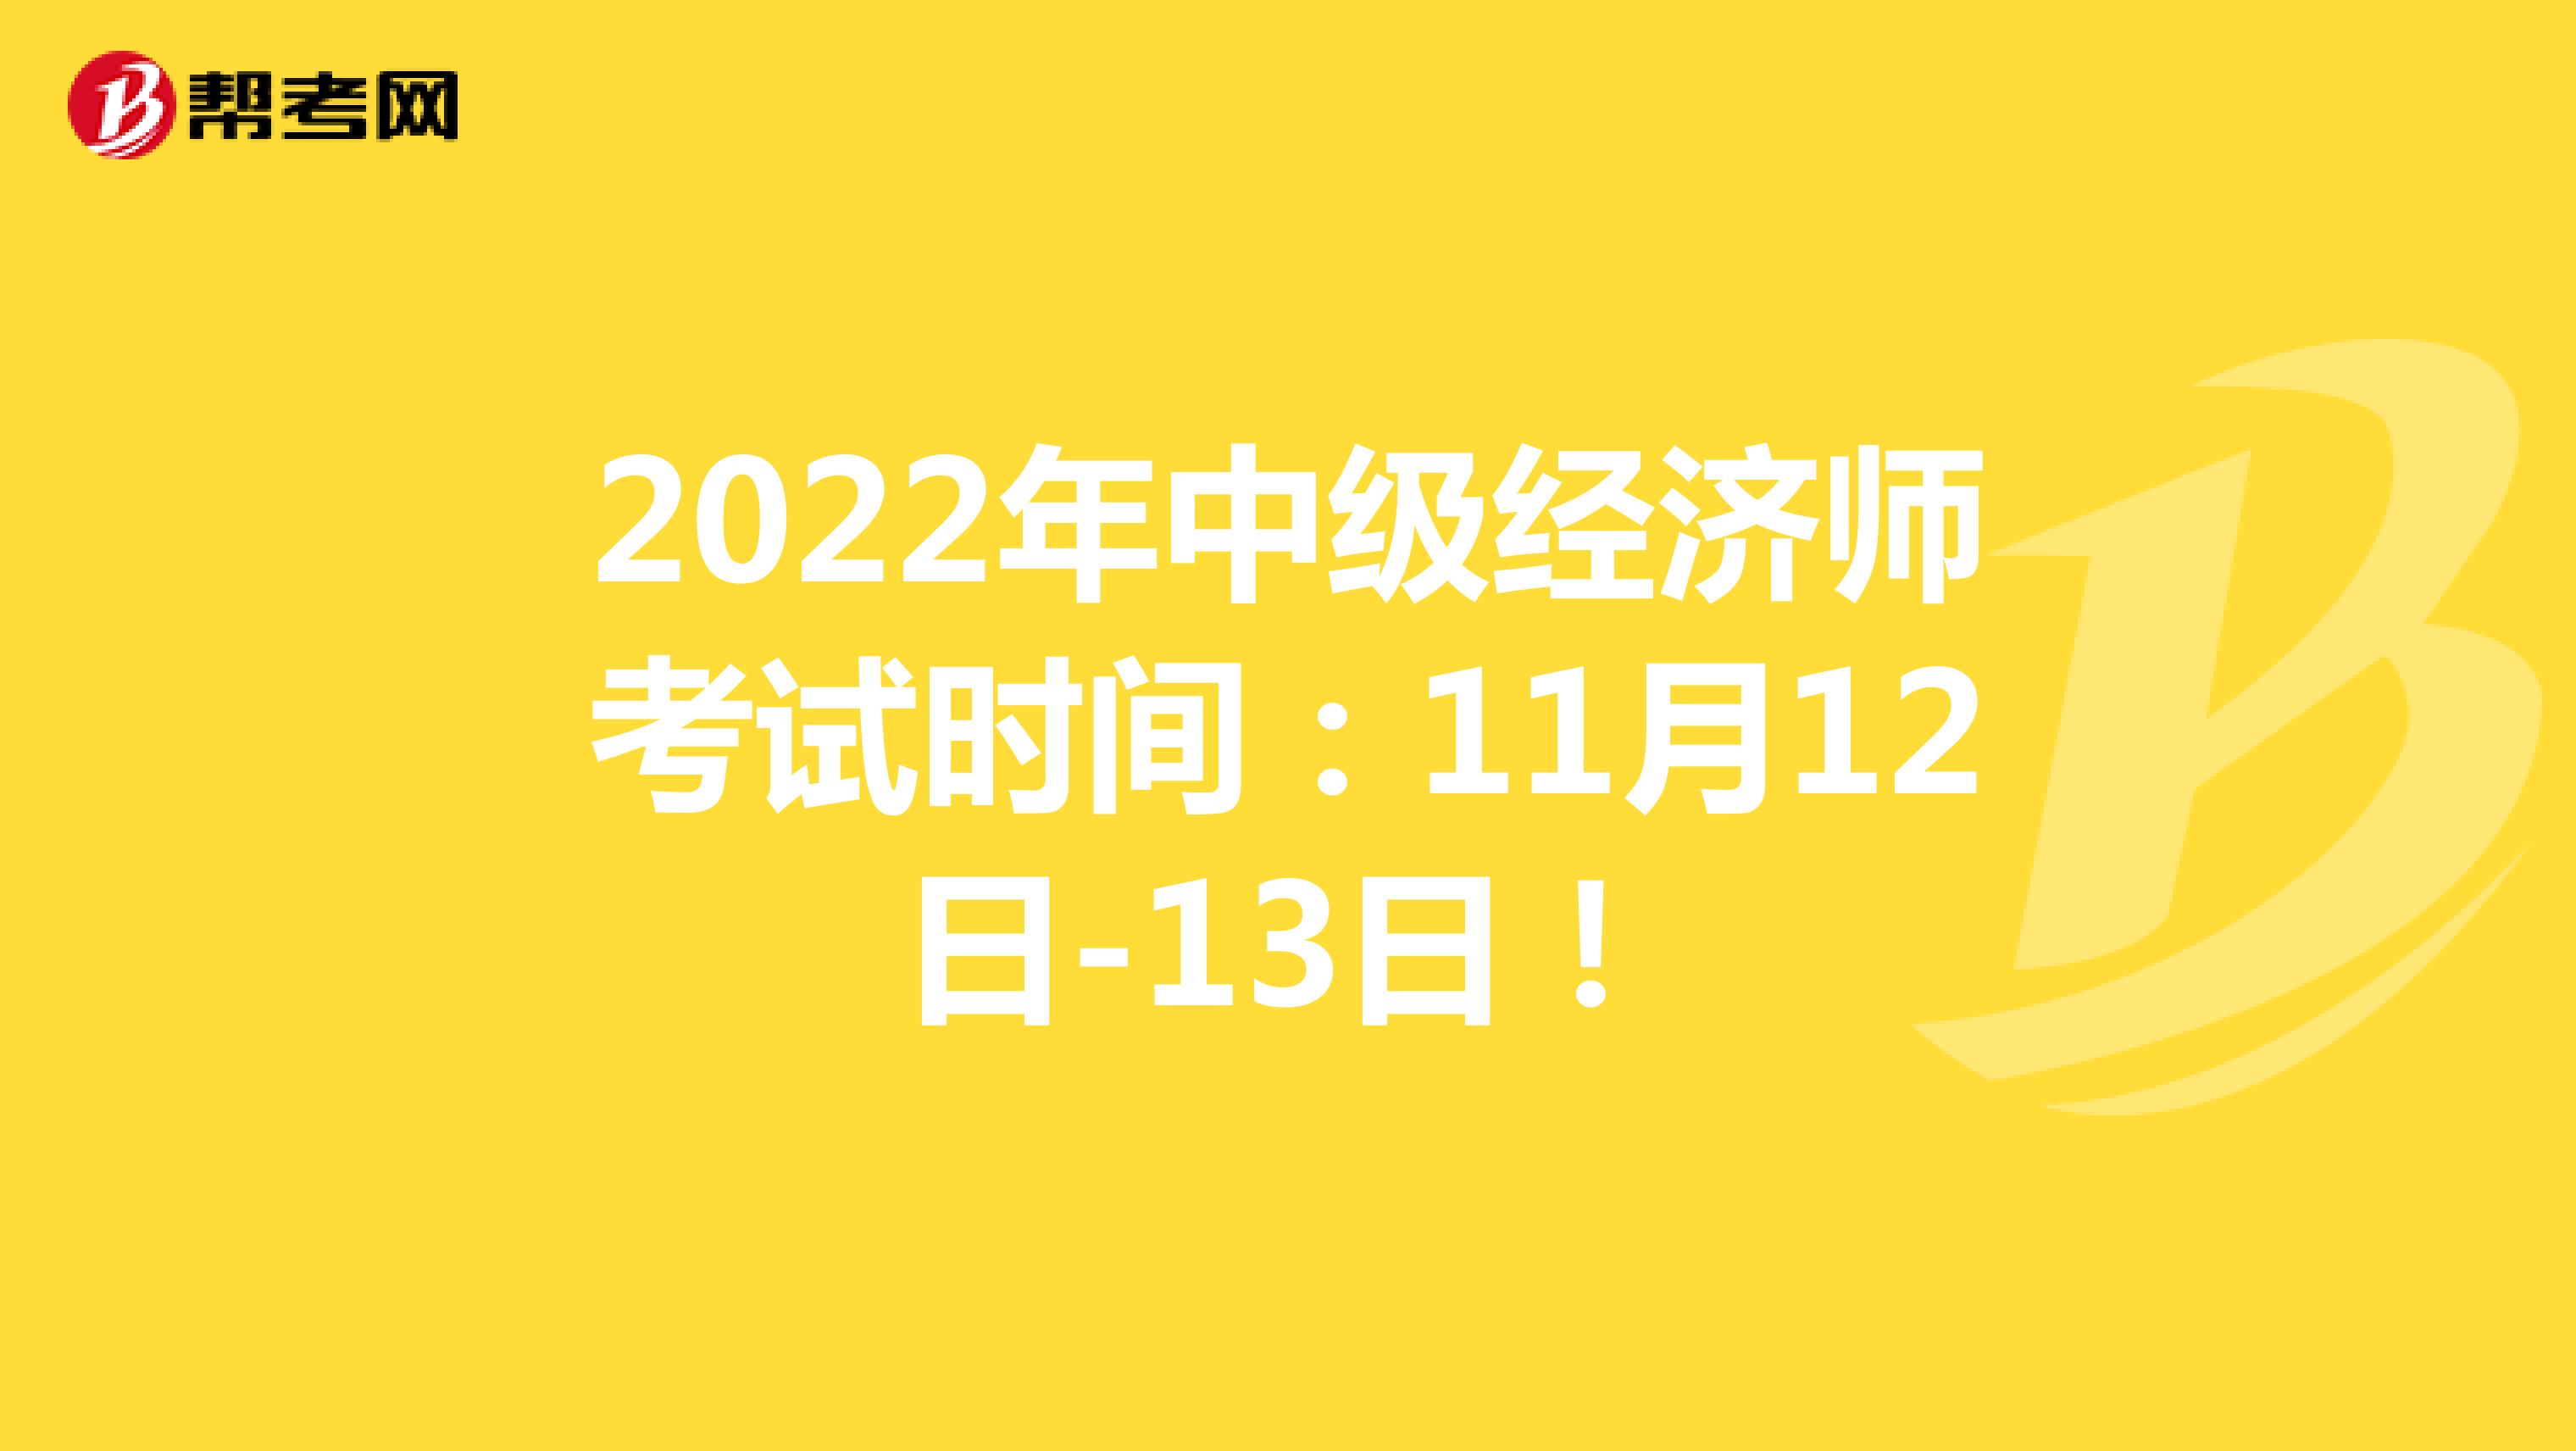 2022年中级经济师考试时间：11月12日-13日！